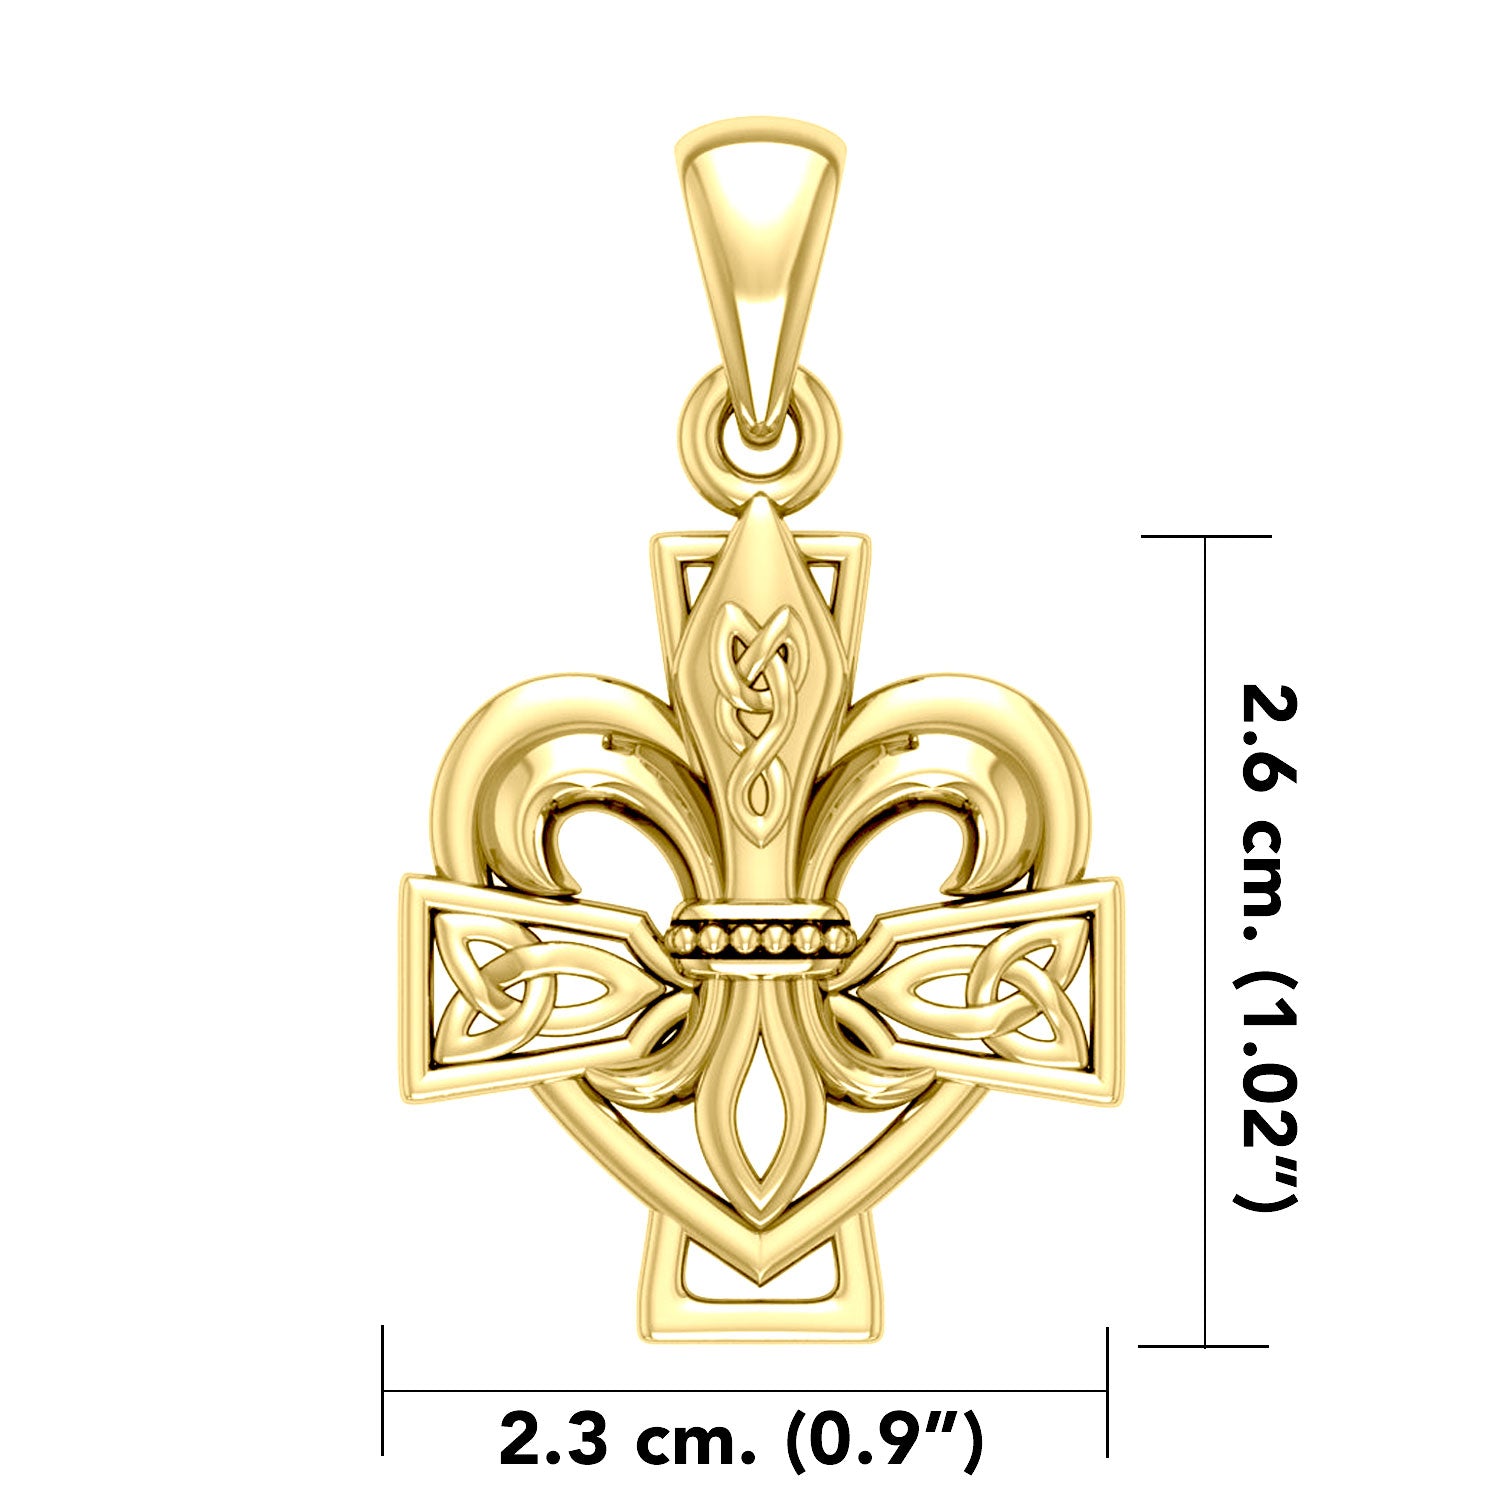 Fleur-de-Lis and Celtic Cross Solid Gold Pendant GPD6068